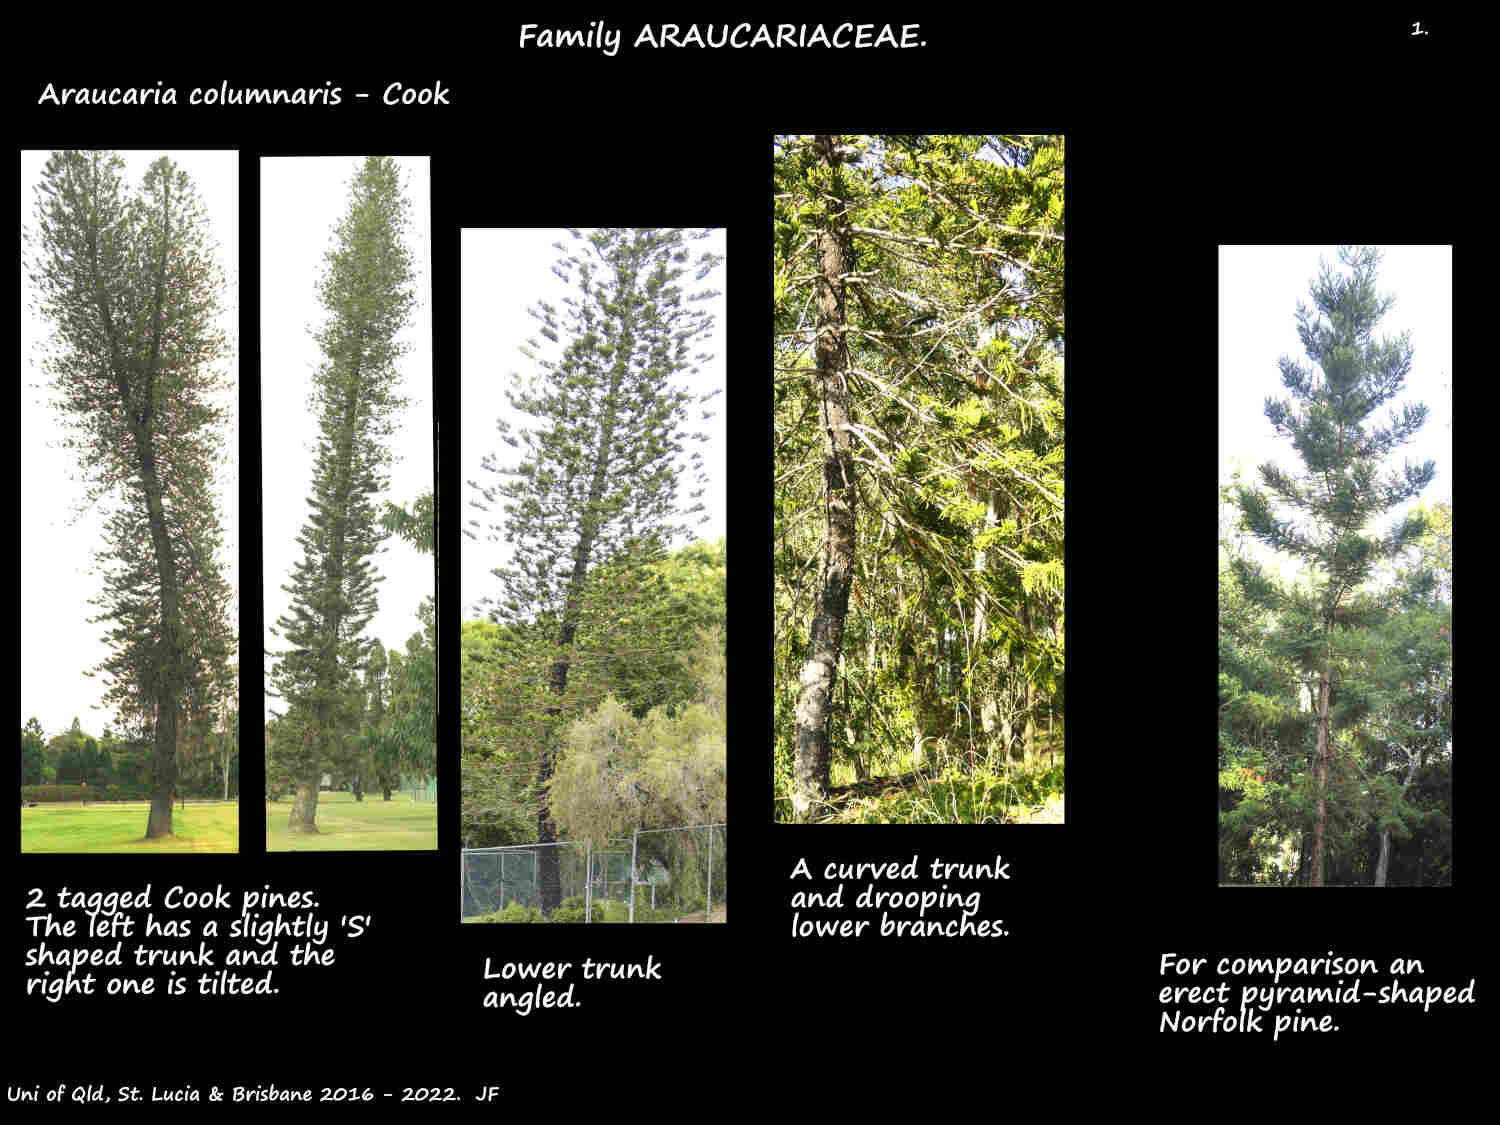 1 Araucaria columnaris trees